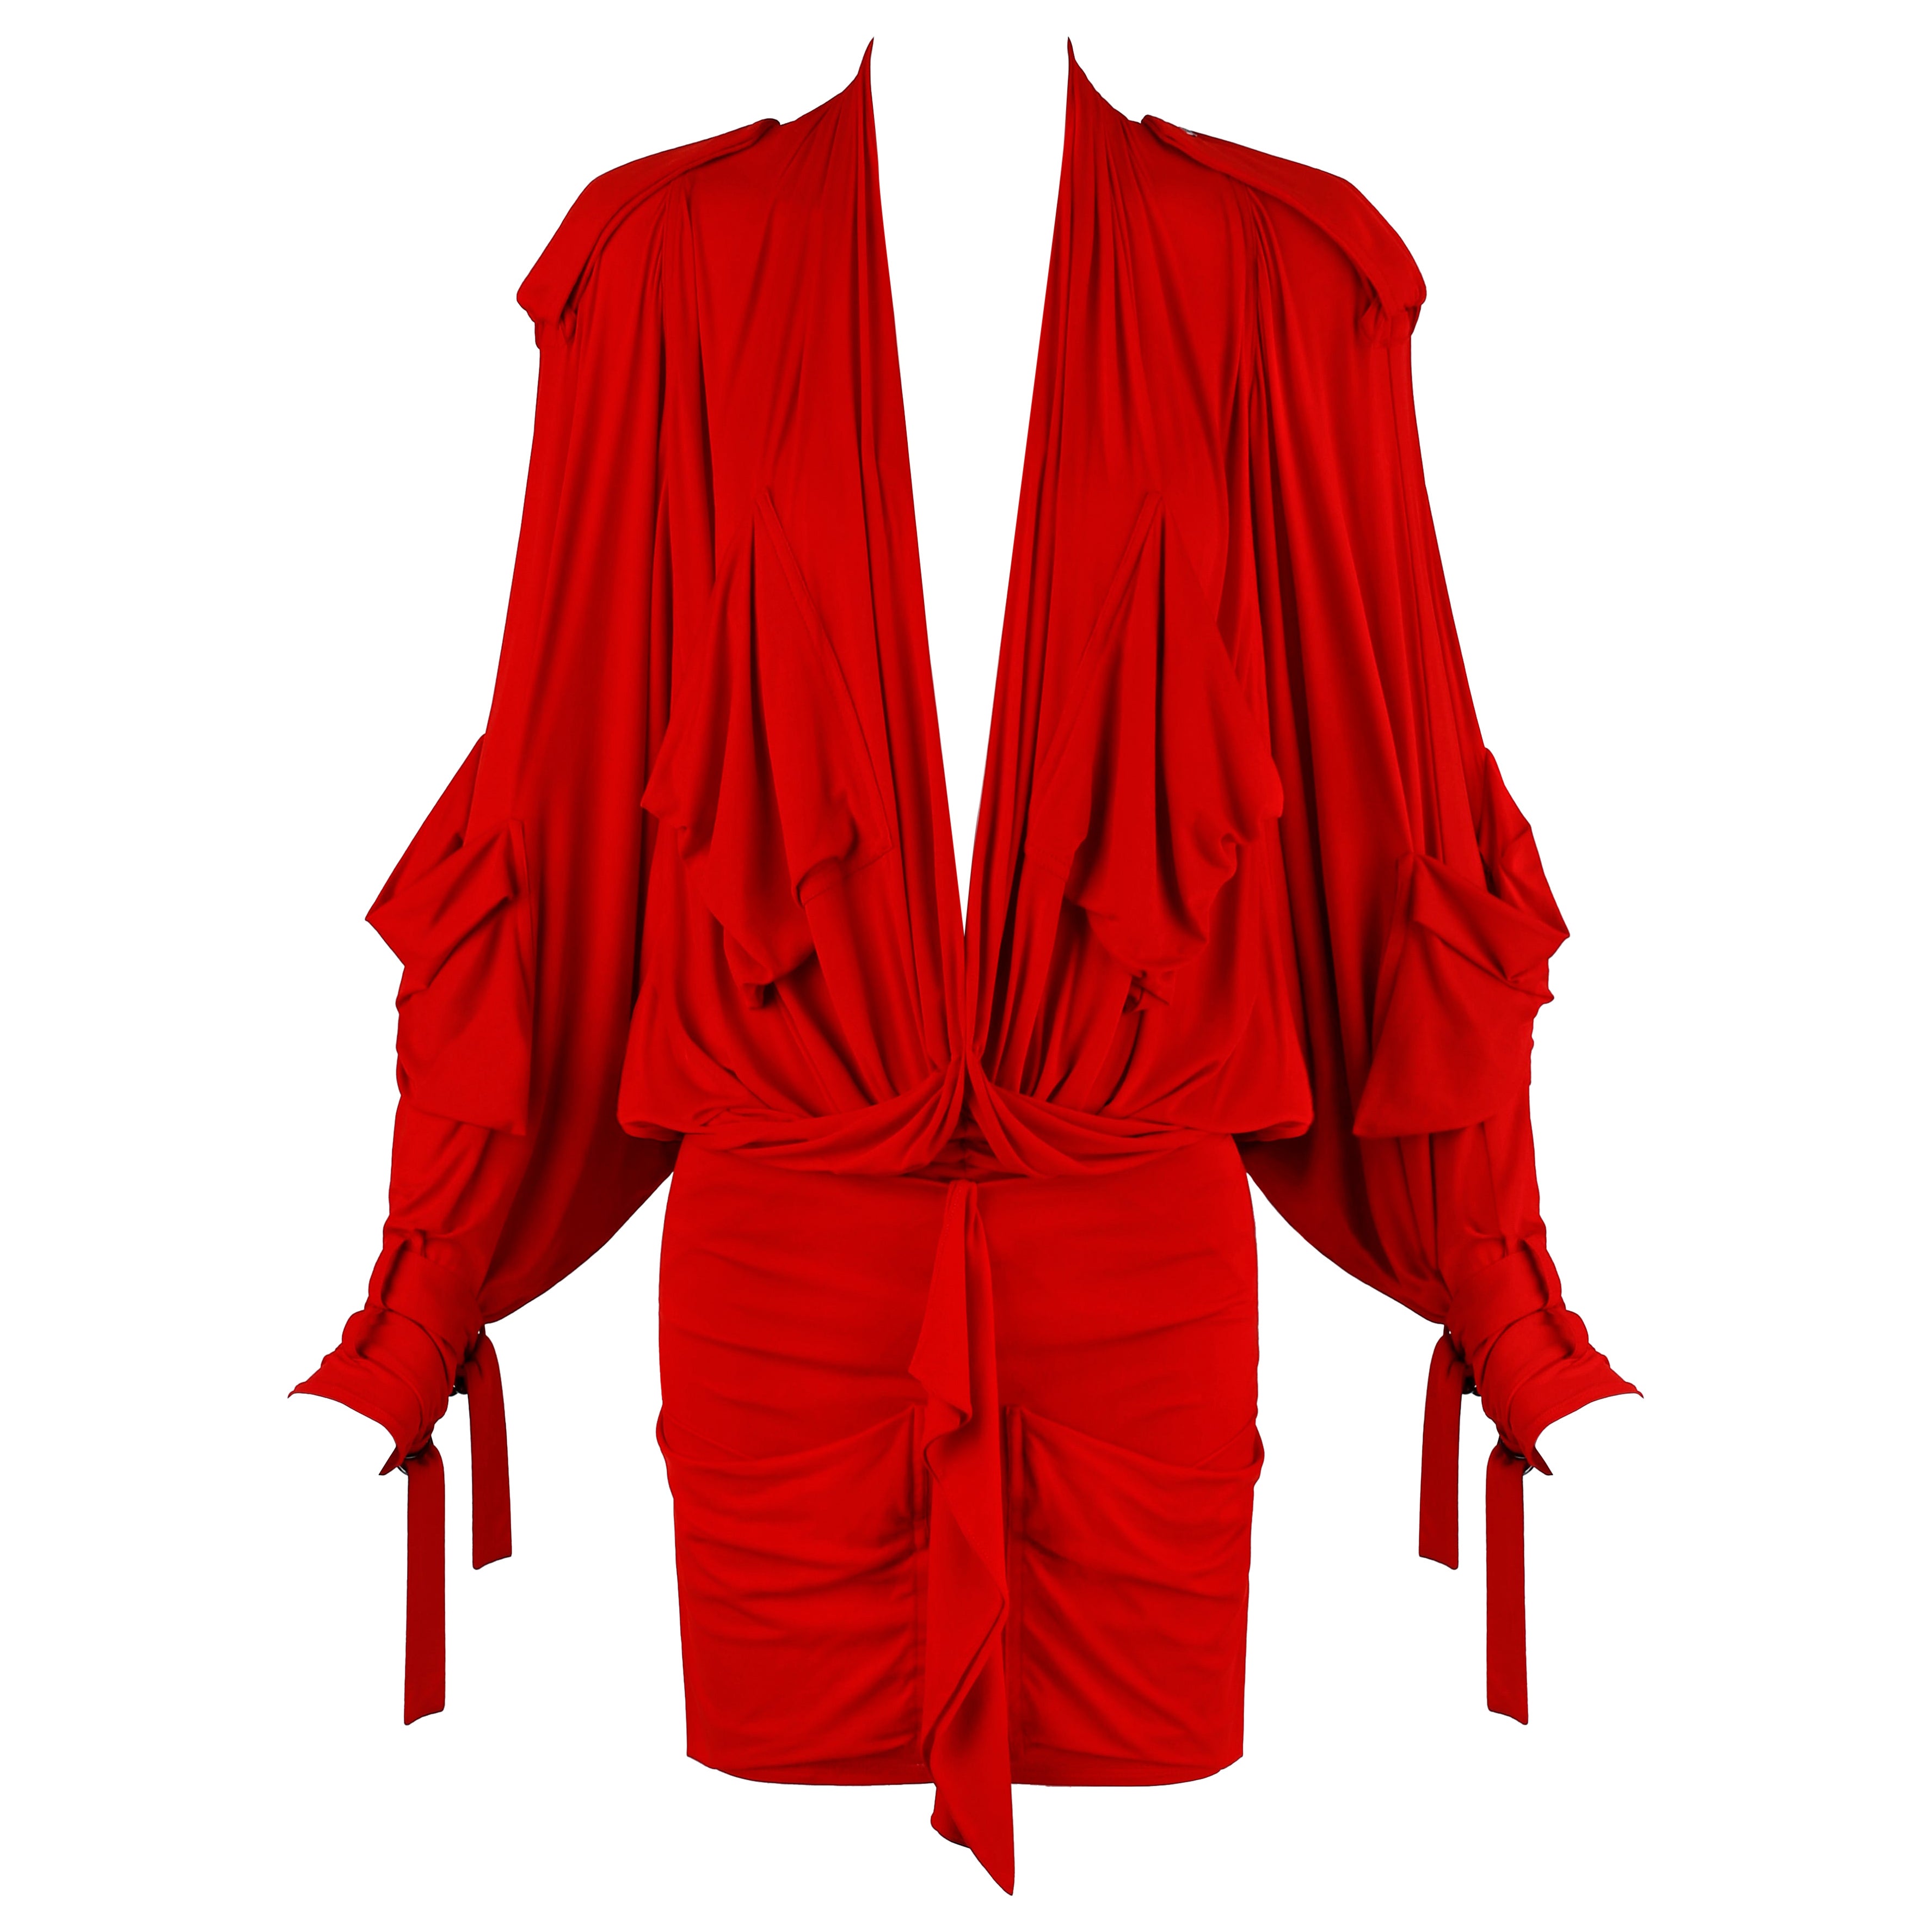 Christian Dior John Galliano F/S 2003 Rotes, tief ausgeschnittenes Minikleid mit Tasche